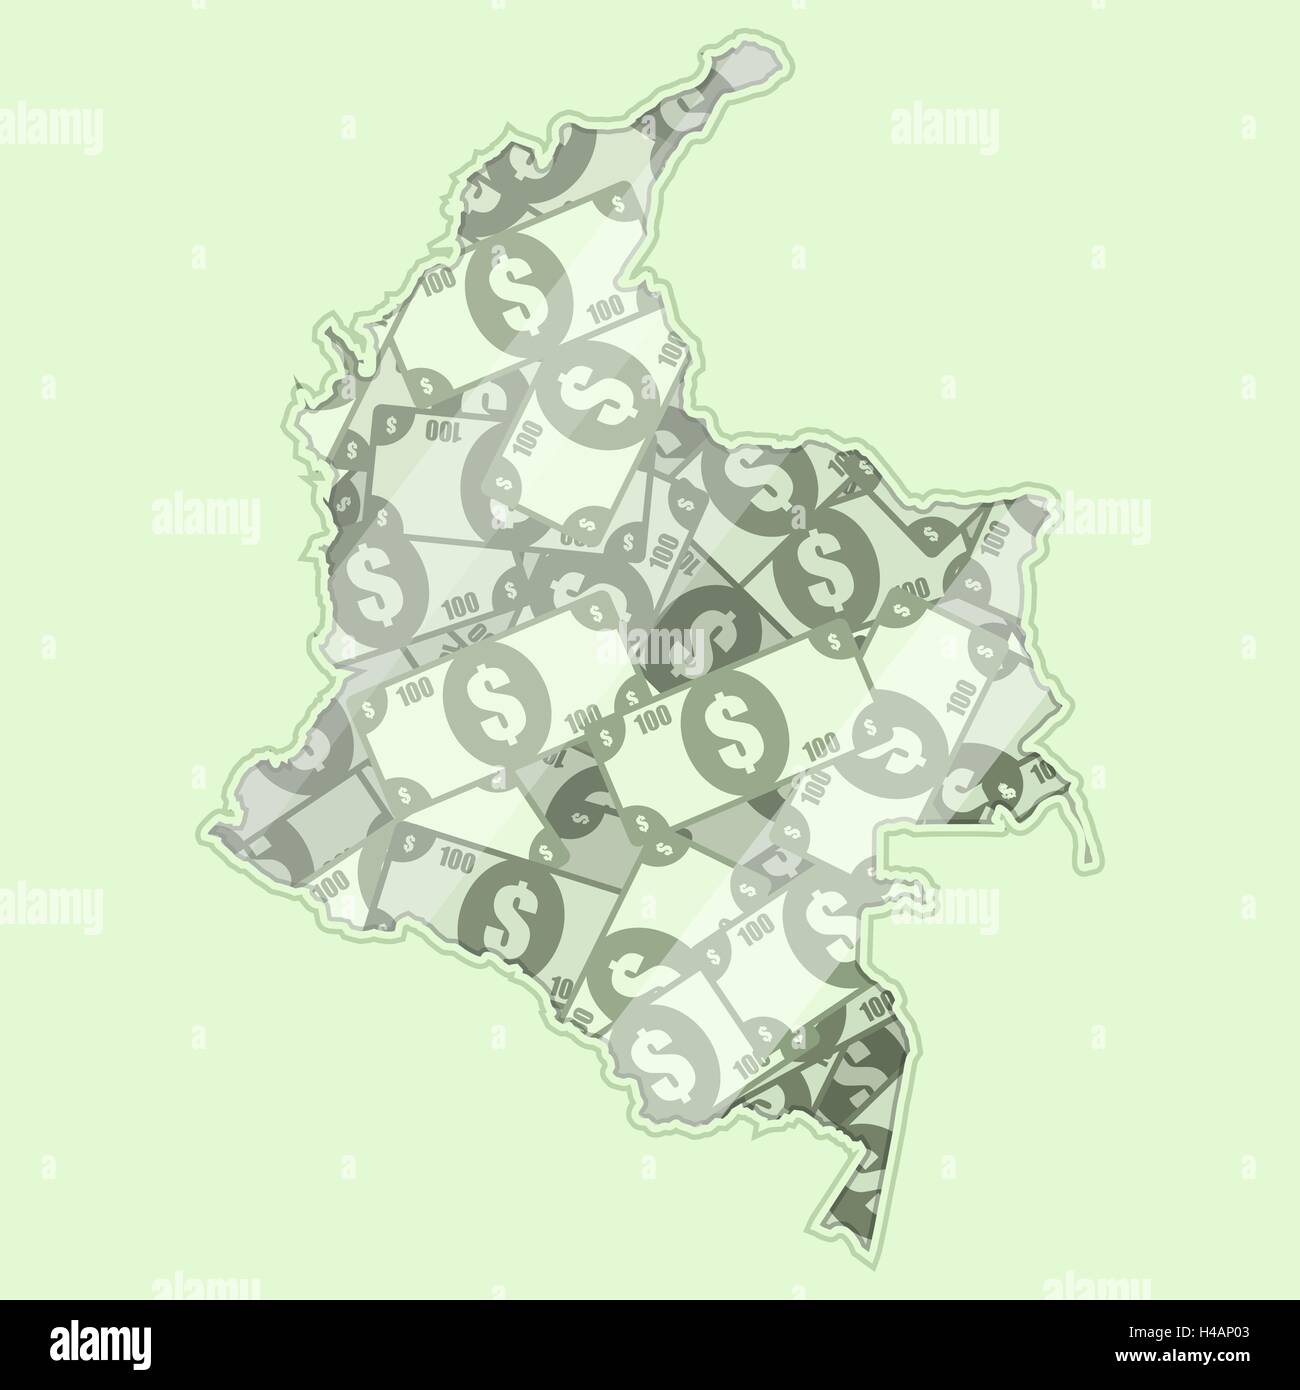 Landkarte Kolumbien bedeckt in Geld, Banknoten von 100 US-Dollar. Auf der Karte gibt es Glas Reflexion. Konzeptionelle. Stock Vektor